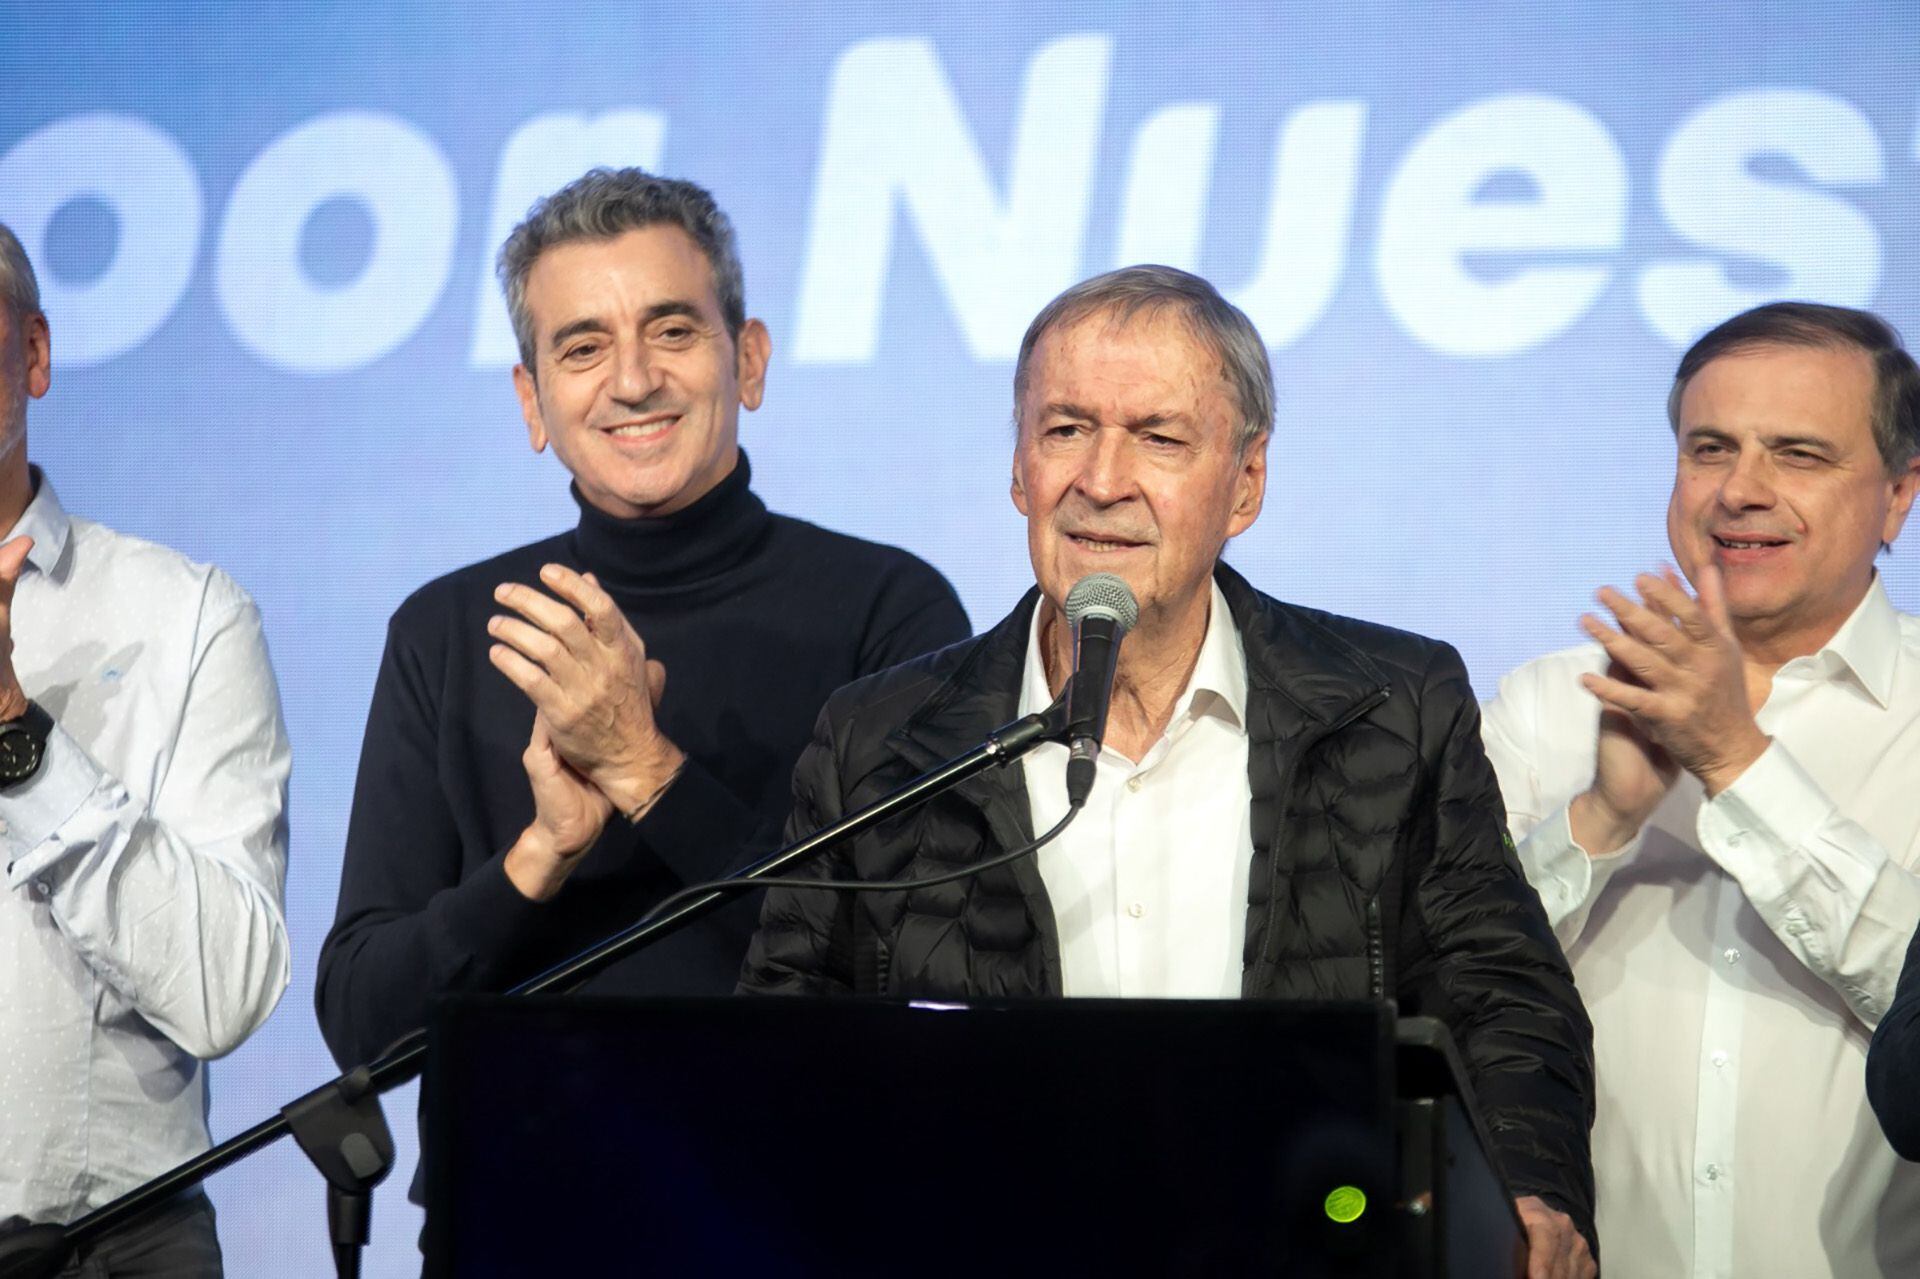 El cordobés Juan Schiaretti sacó el 3,71% de los votos en las PASO y será uno de los cinco candidatos que competirán por la presidencia de la Nación el 22 de octubre. Crédito: @JSchiaretti